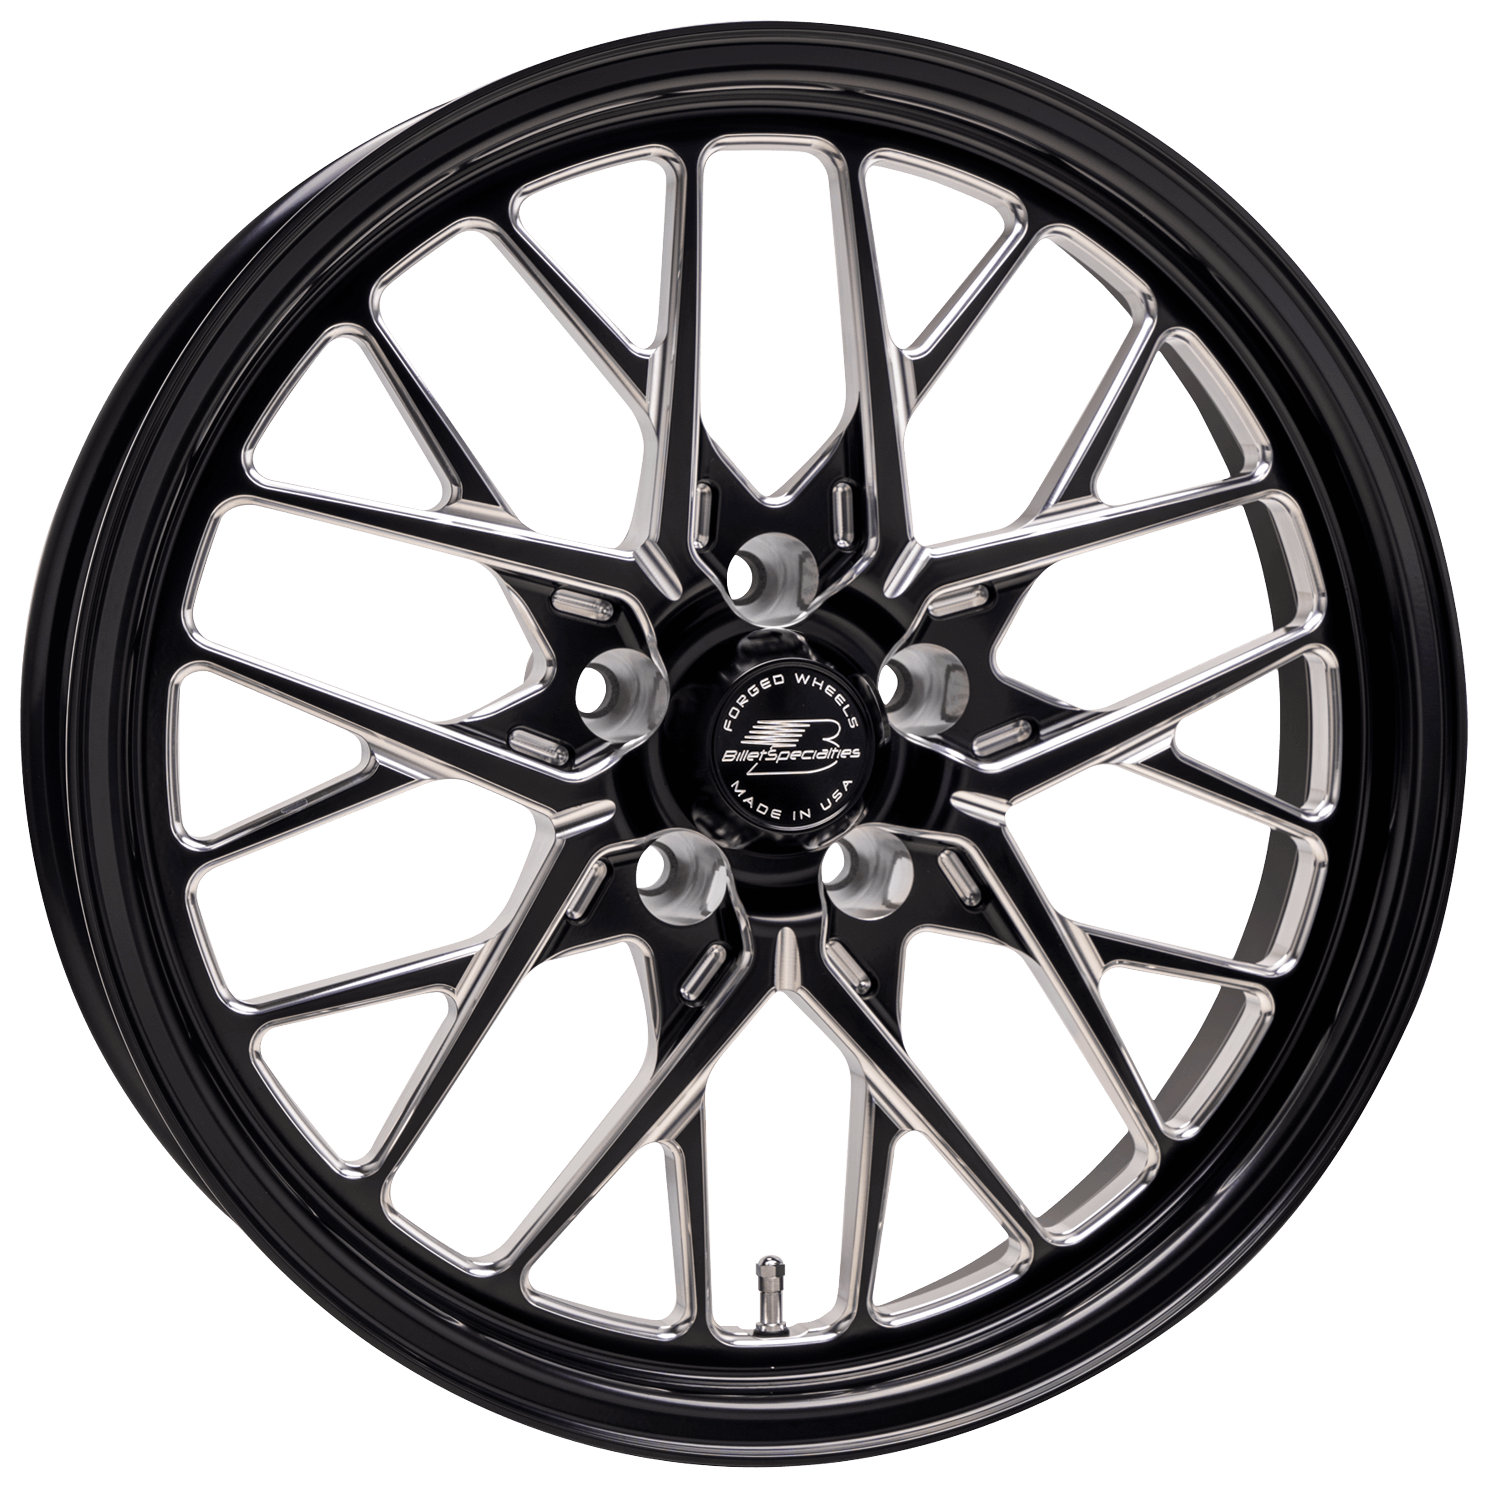 REDLINE Drag Pack Front Wheel, Size: 18" x 5", Bolt Pattern: 5 x 120 mm, Offset: 12 mm [Black]